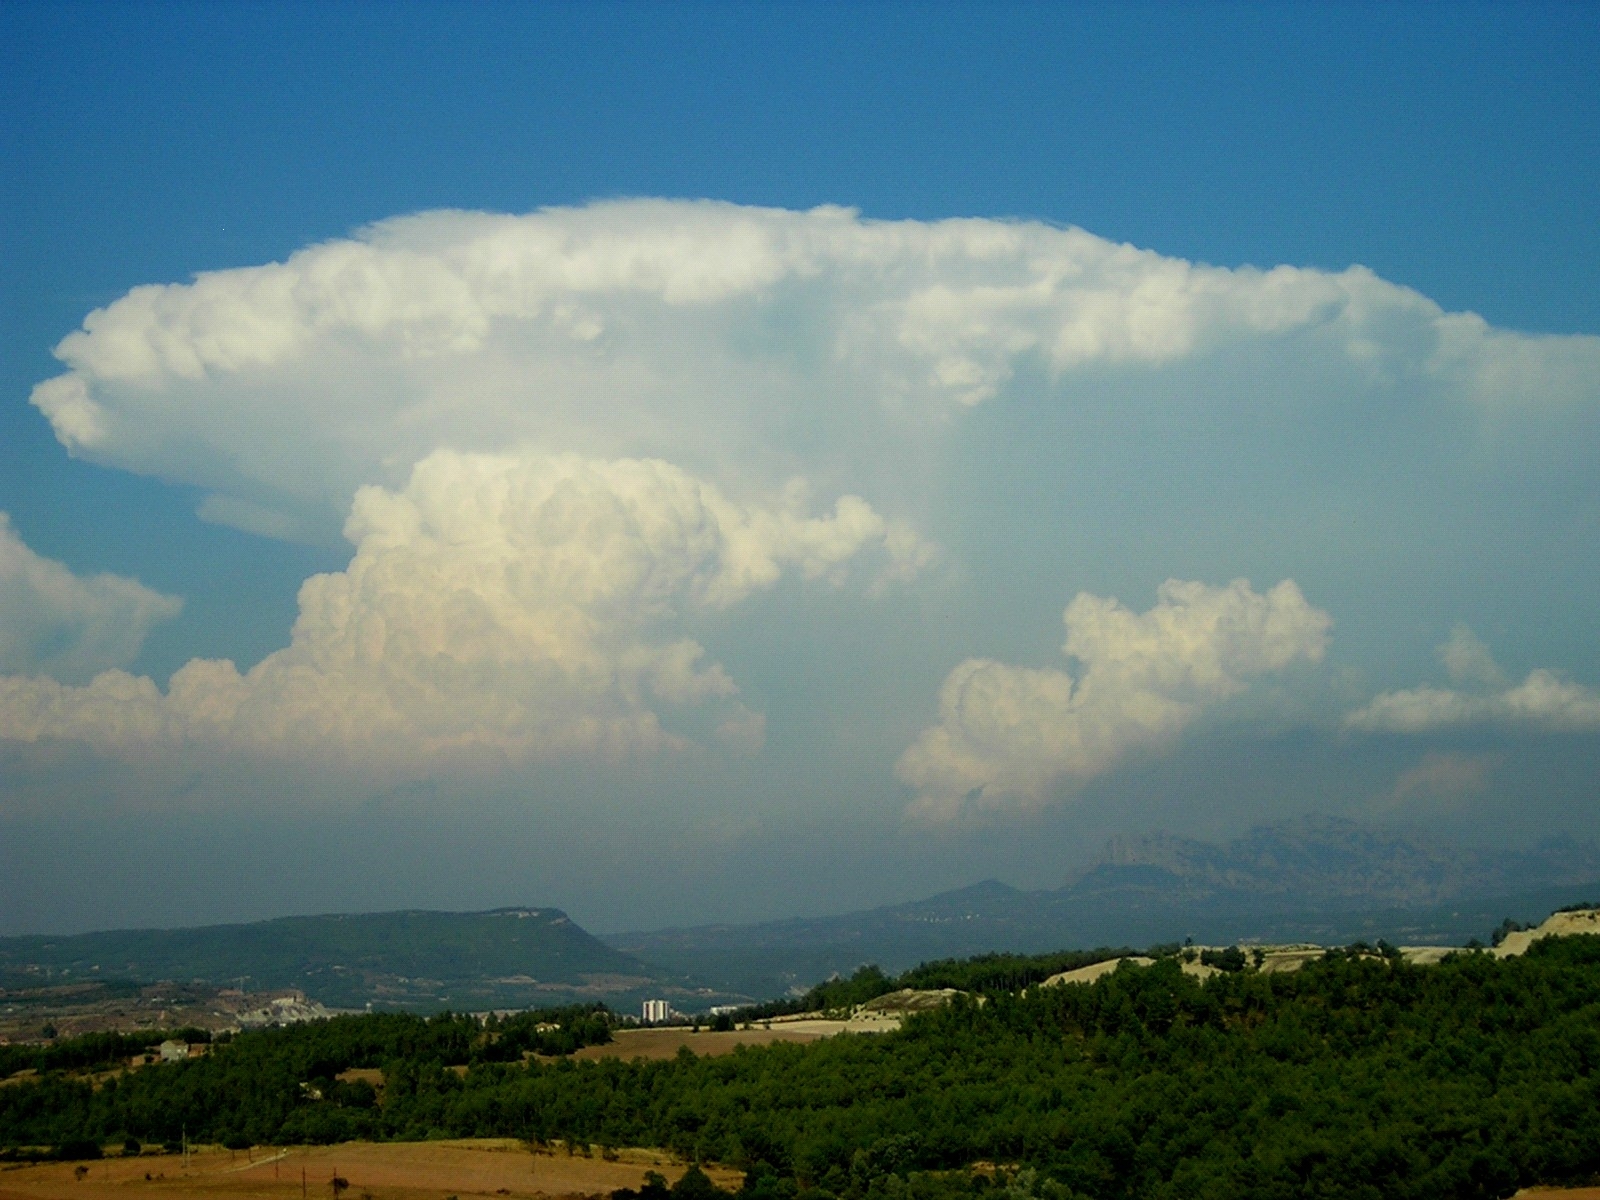 Els núvols seran els protagonistes del seminari que organitza l'Observatori de Pujalt